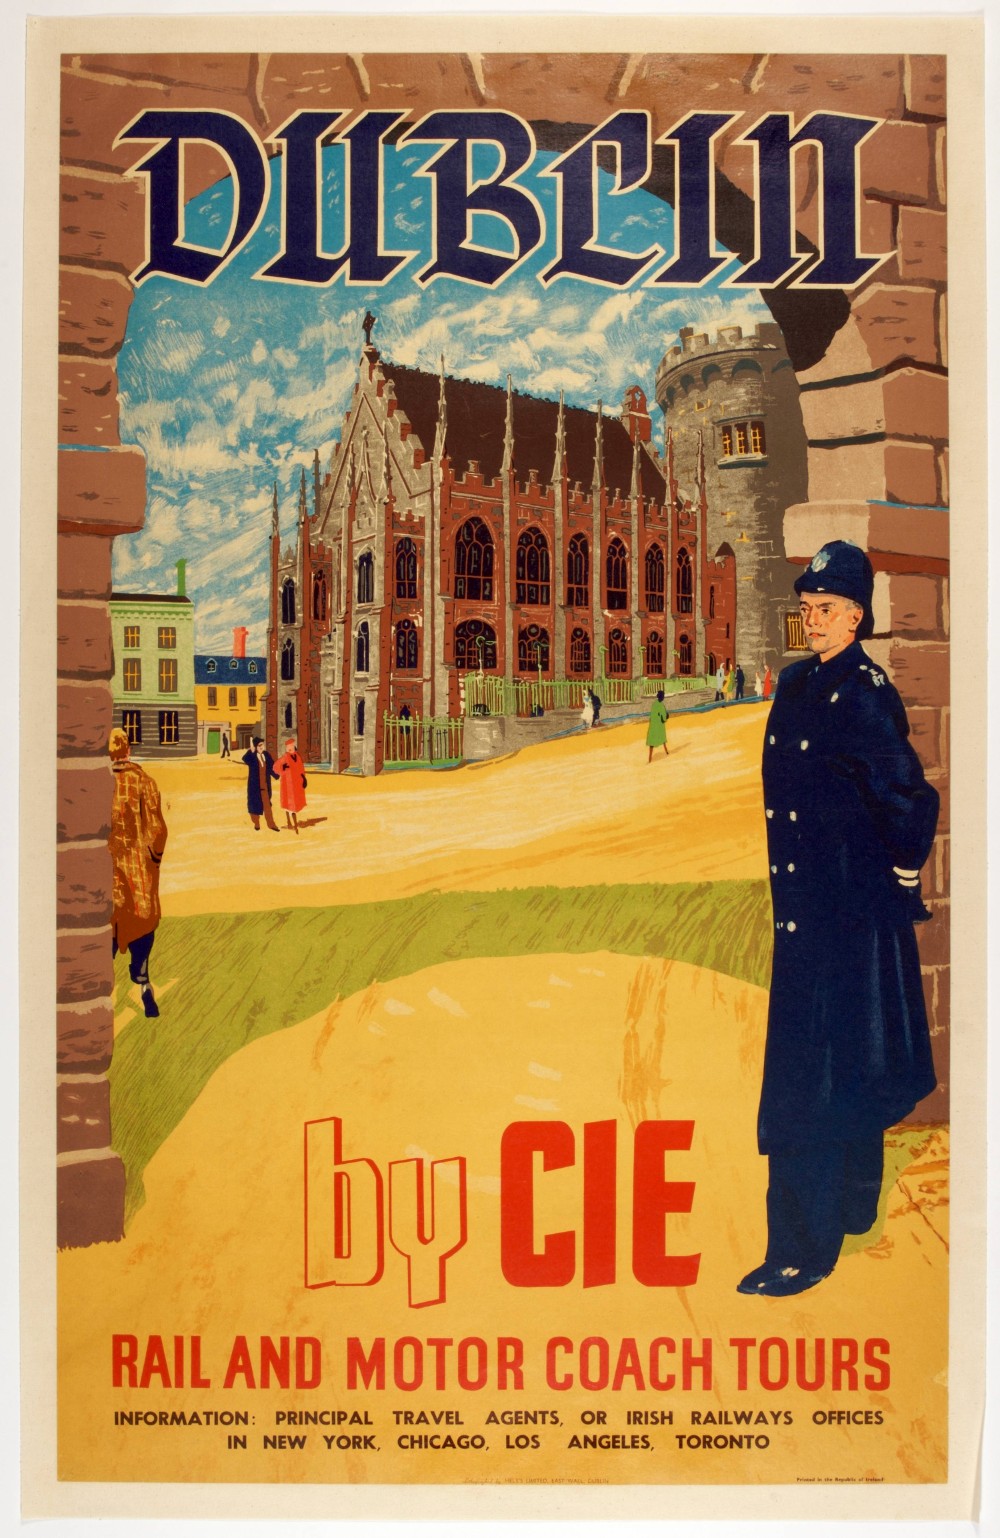 CIE Tours poster, featuring Dublin Castle